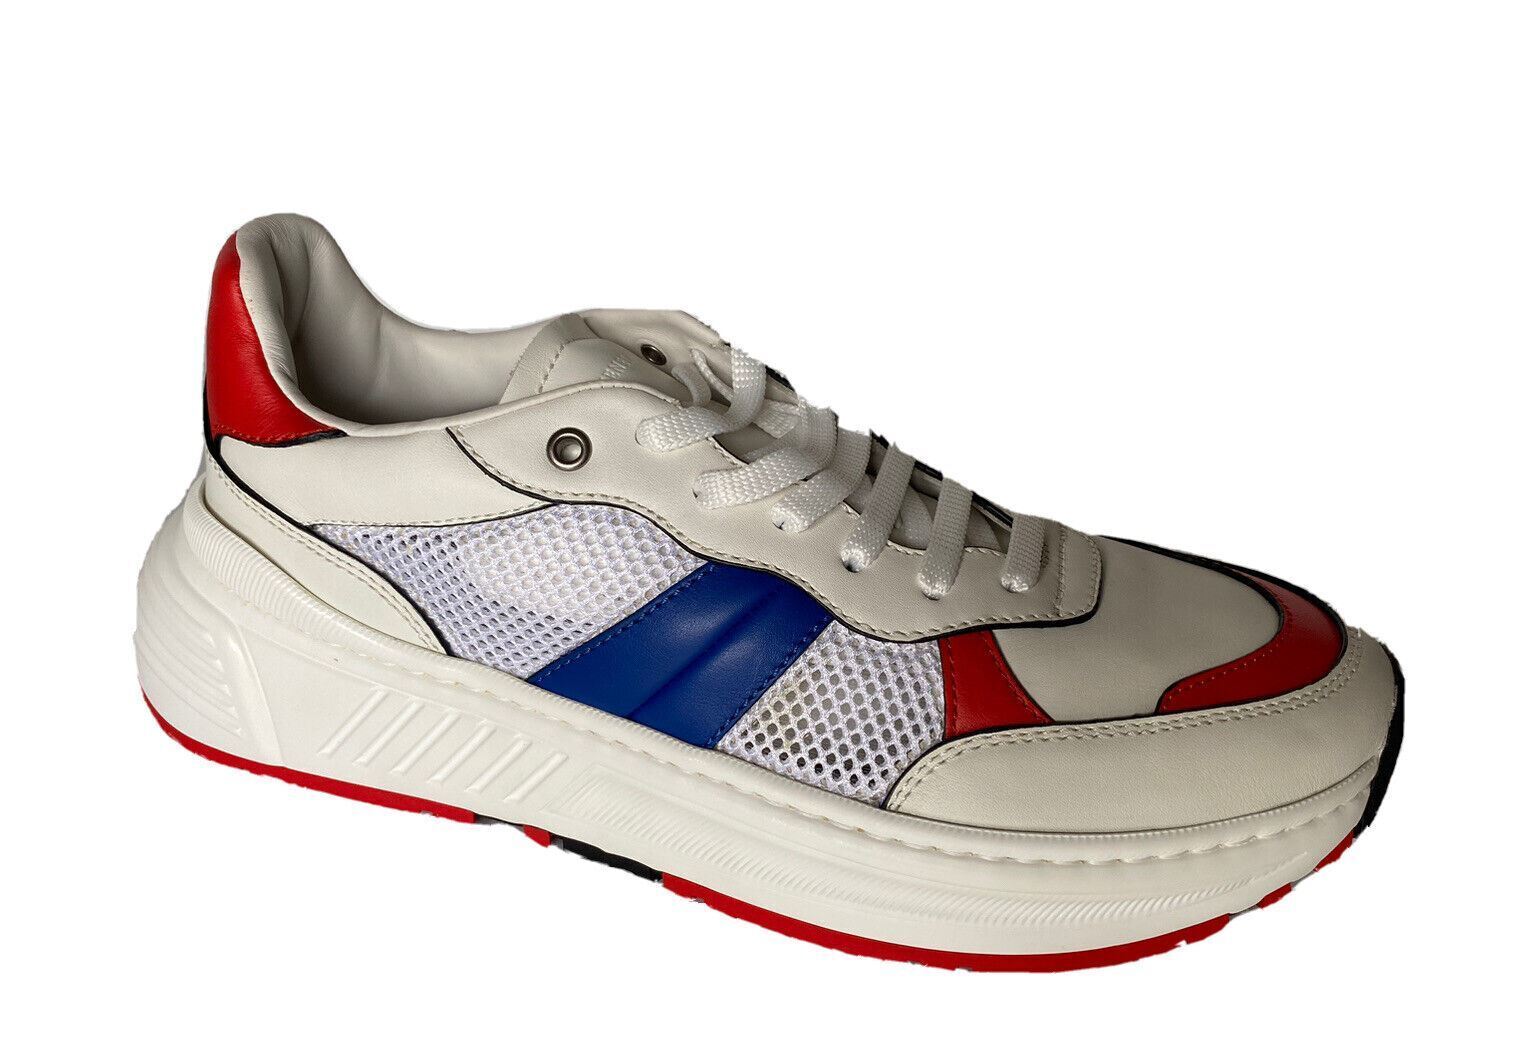 NIB Bottega Veneta Men's Leather & Mesh Sneakers White/Red/Blue 7 US 565646 9080